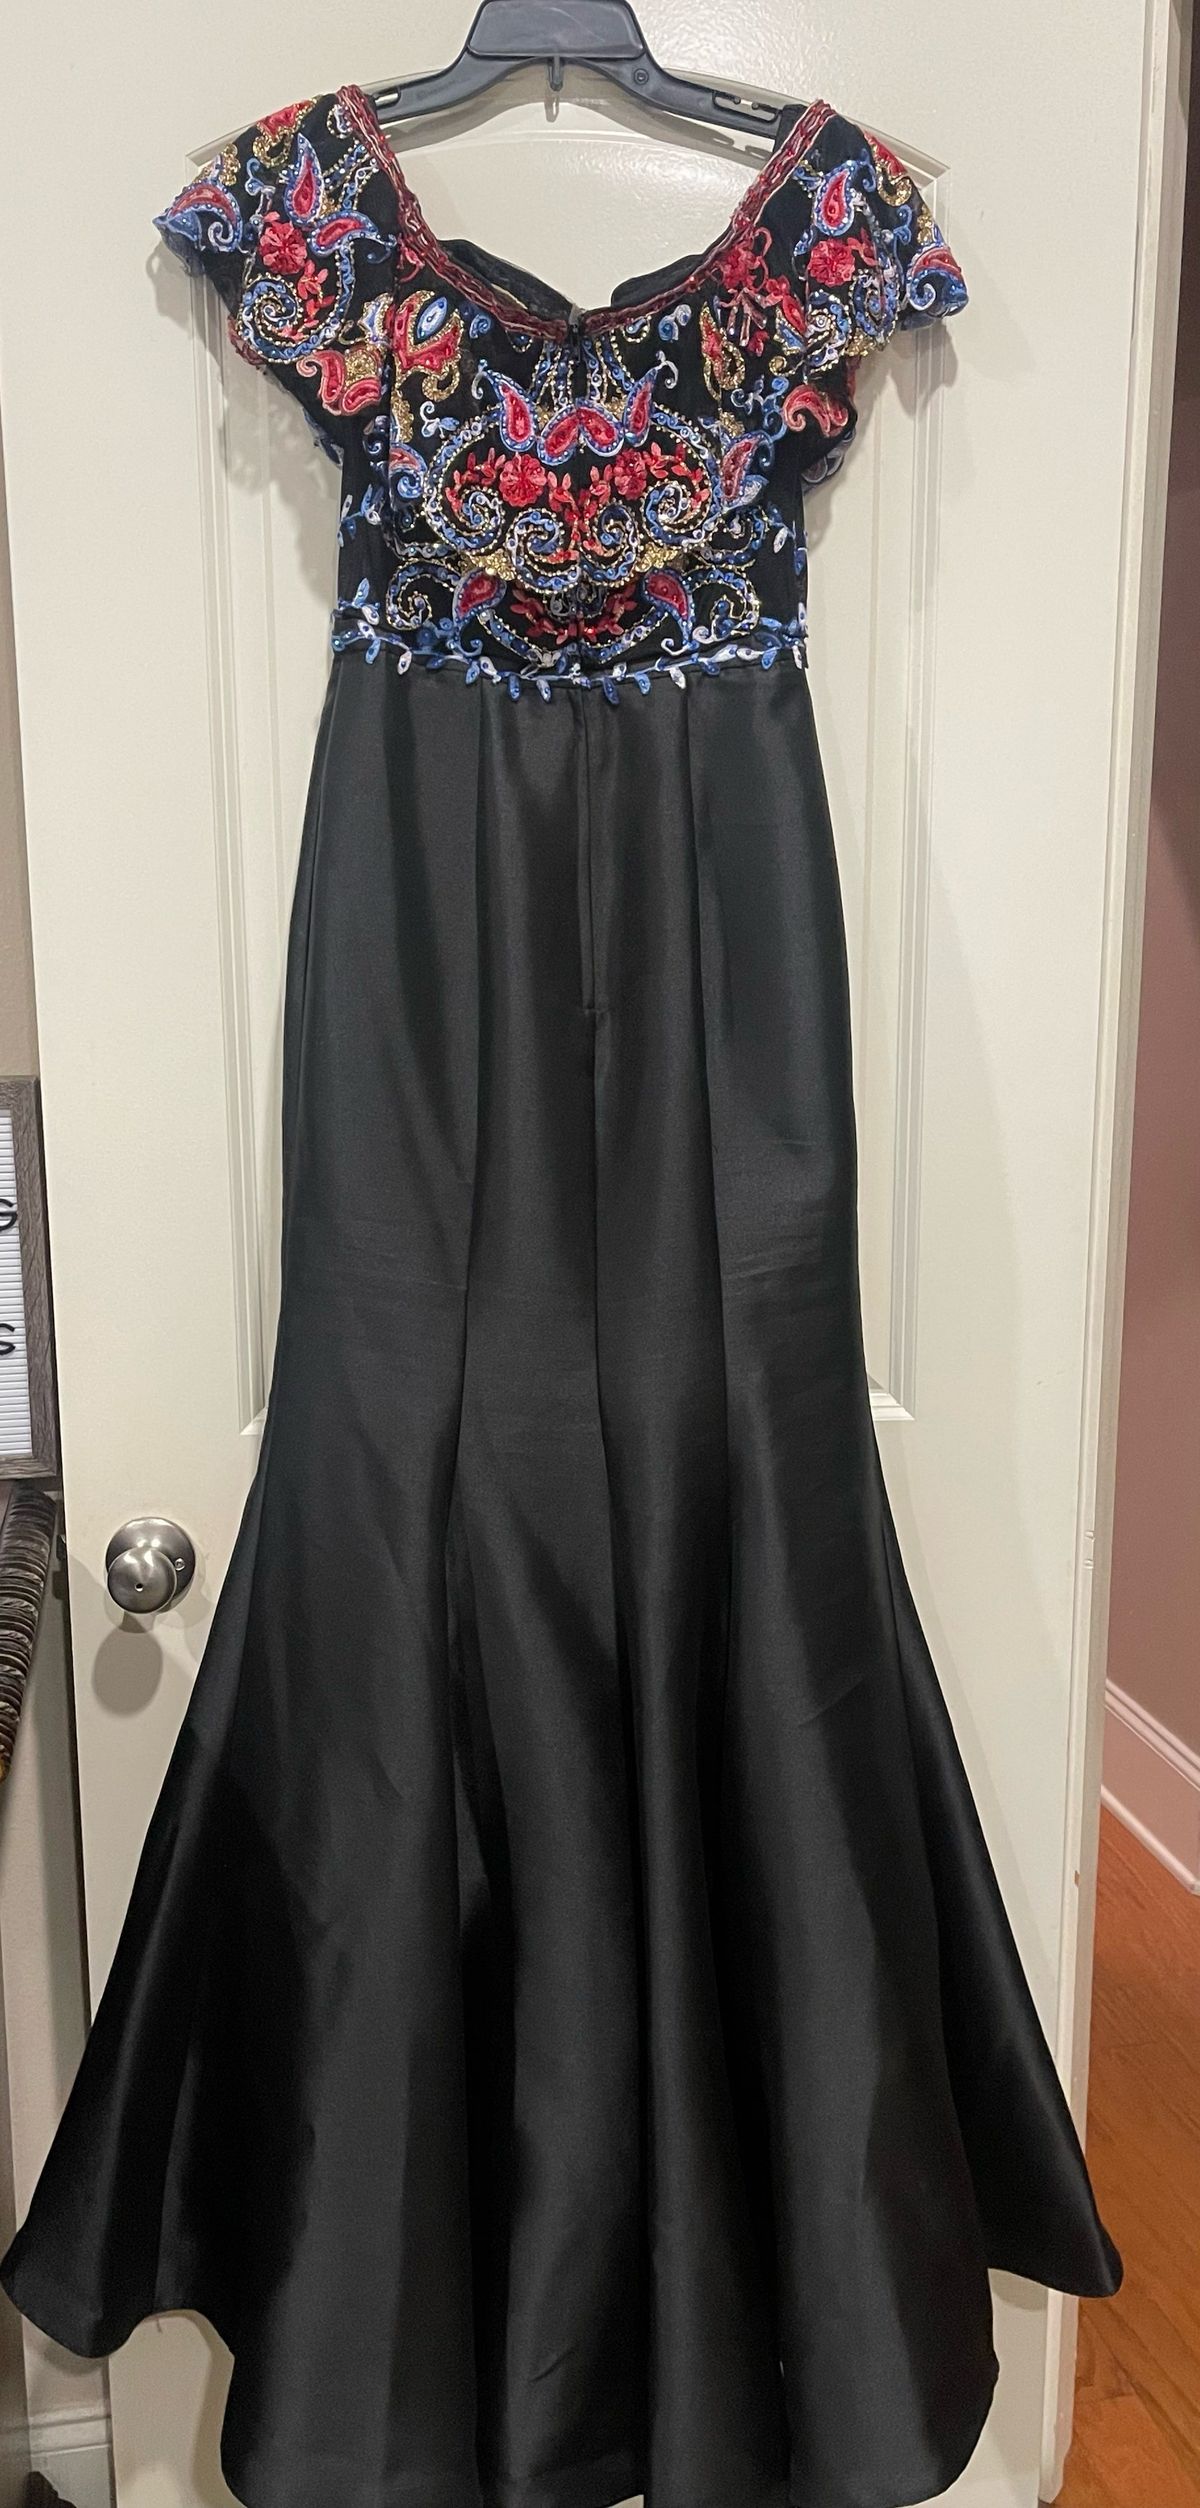 Ellie Wilde Size 8 Prom Black Mermaid Dress on Queenly